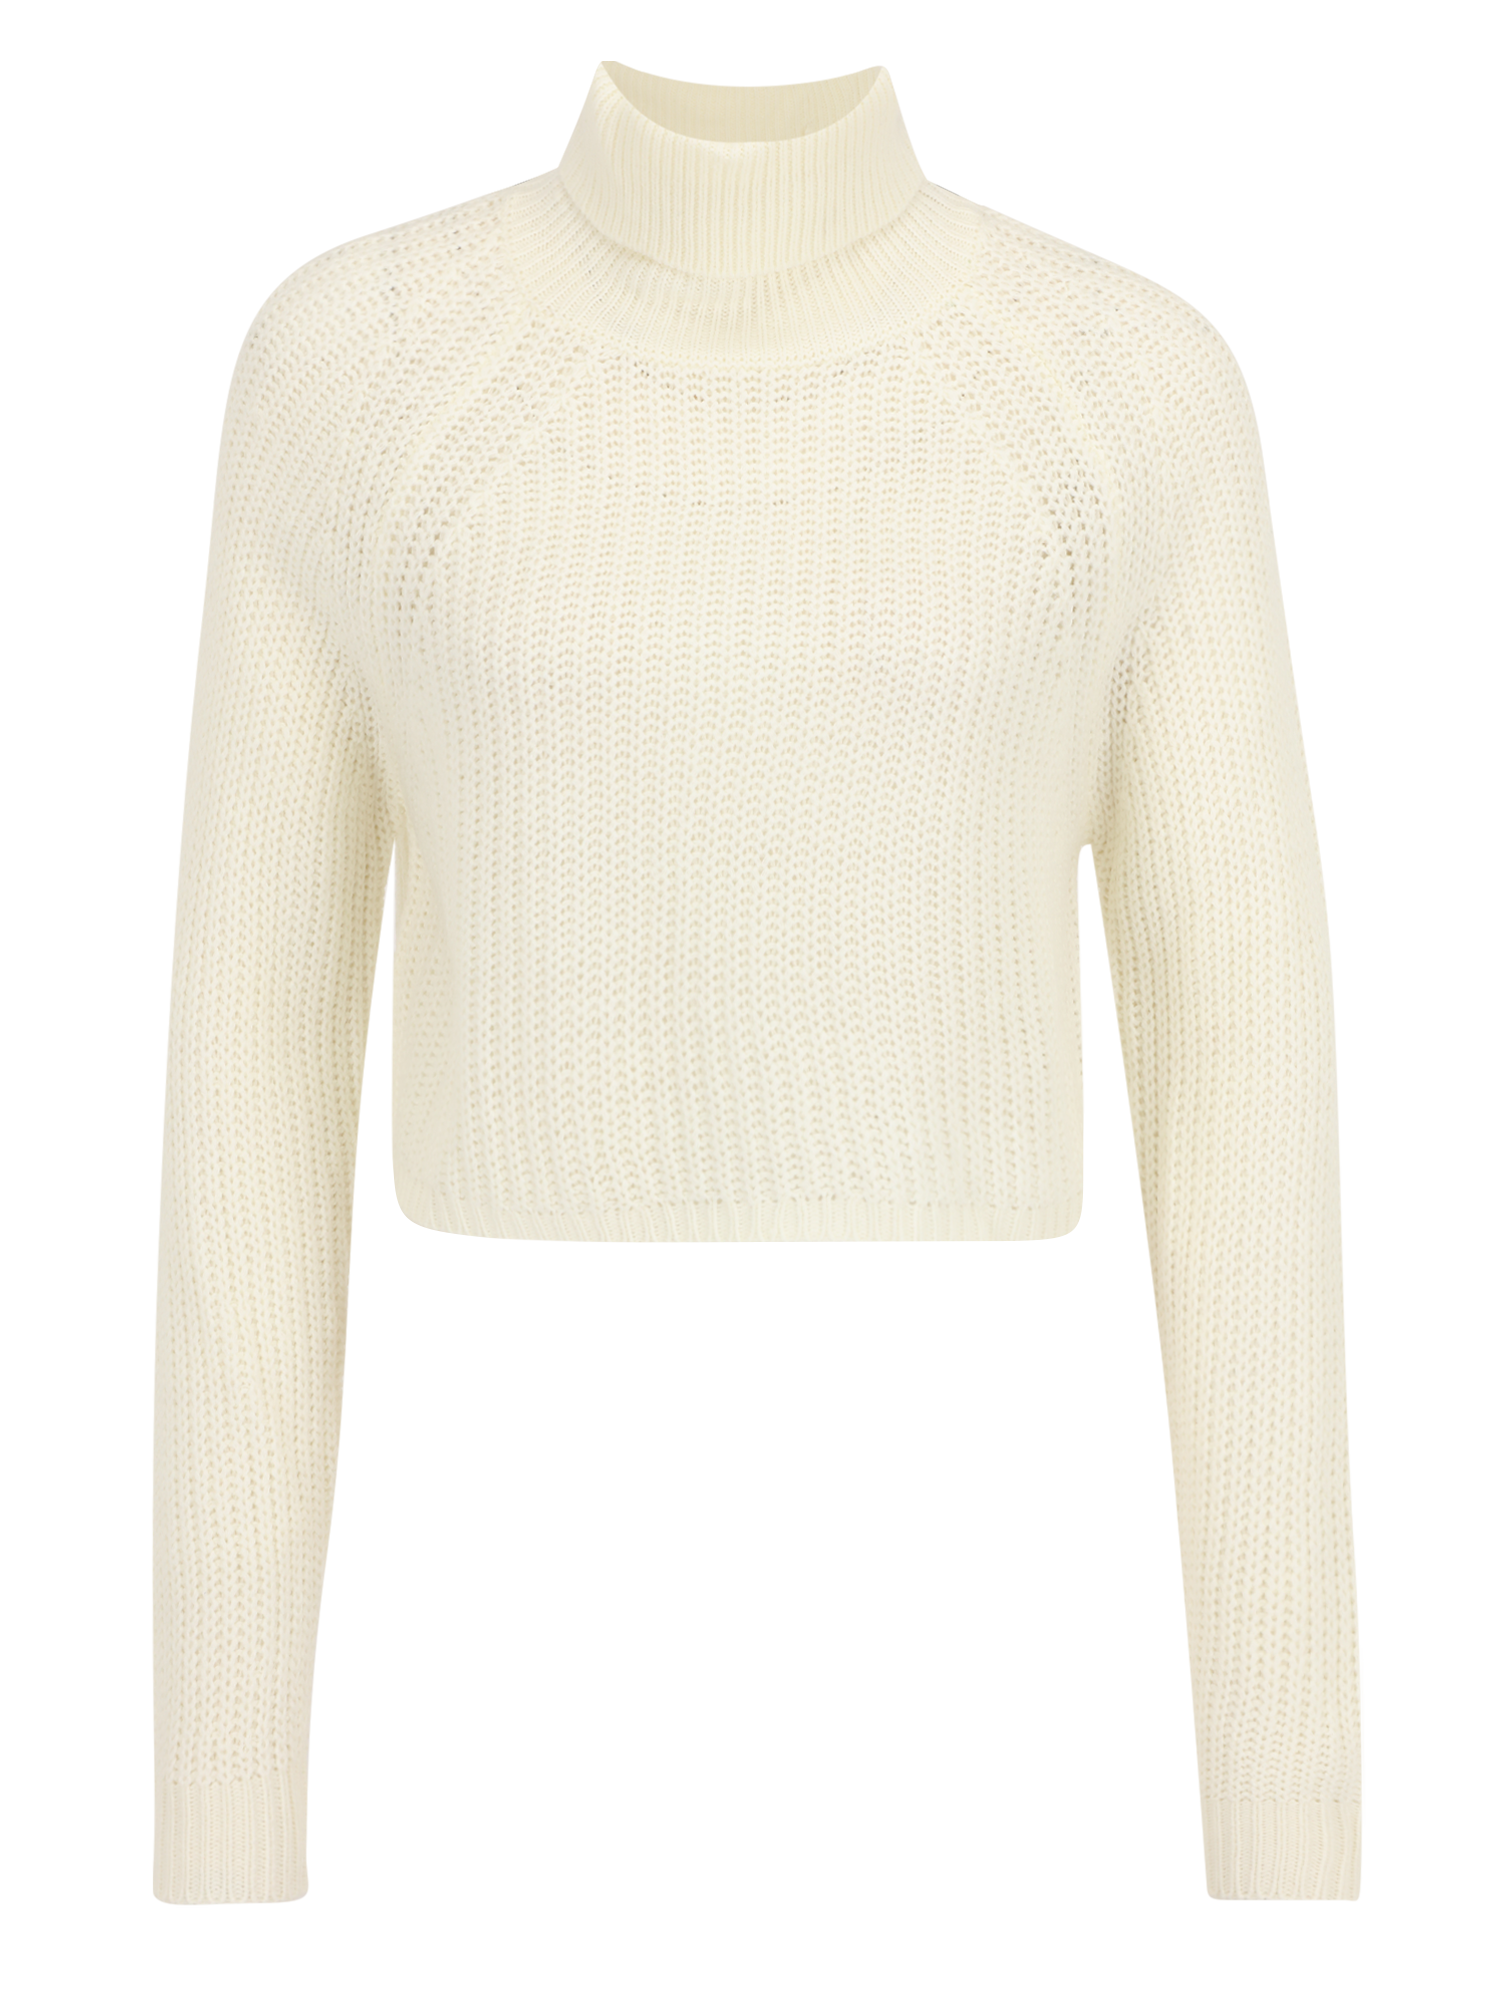 Swetry & dzianina UbCBr Missguided Petite Sweter w kolorze Białym 